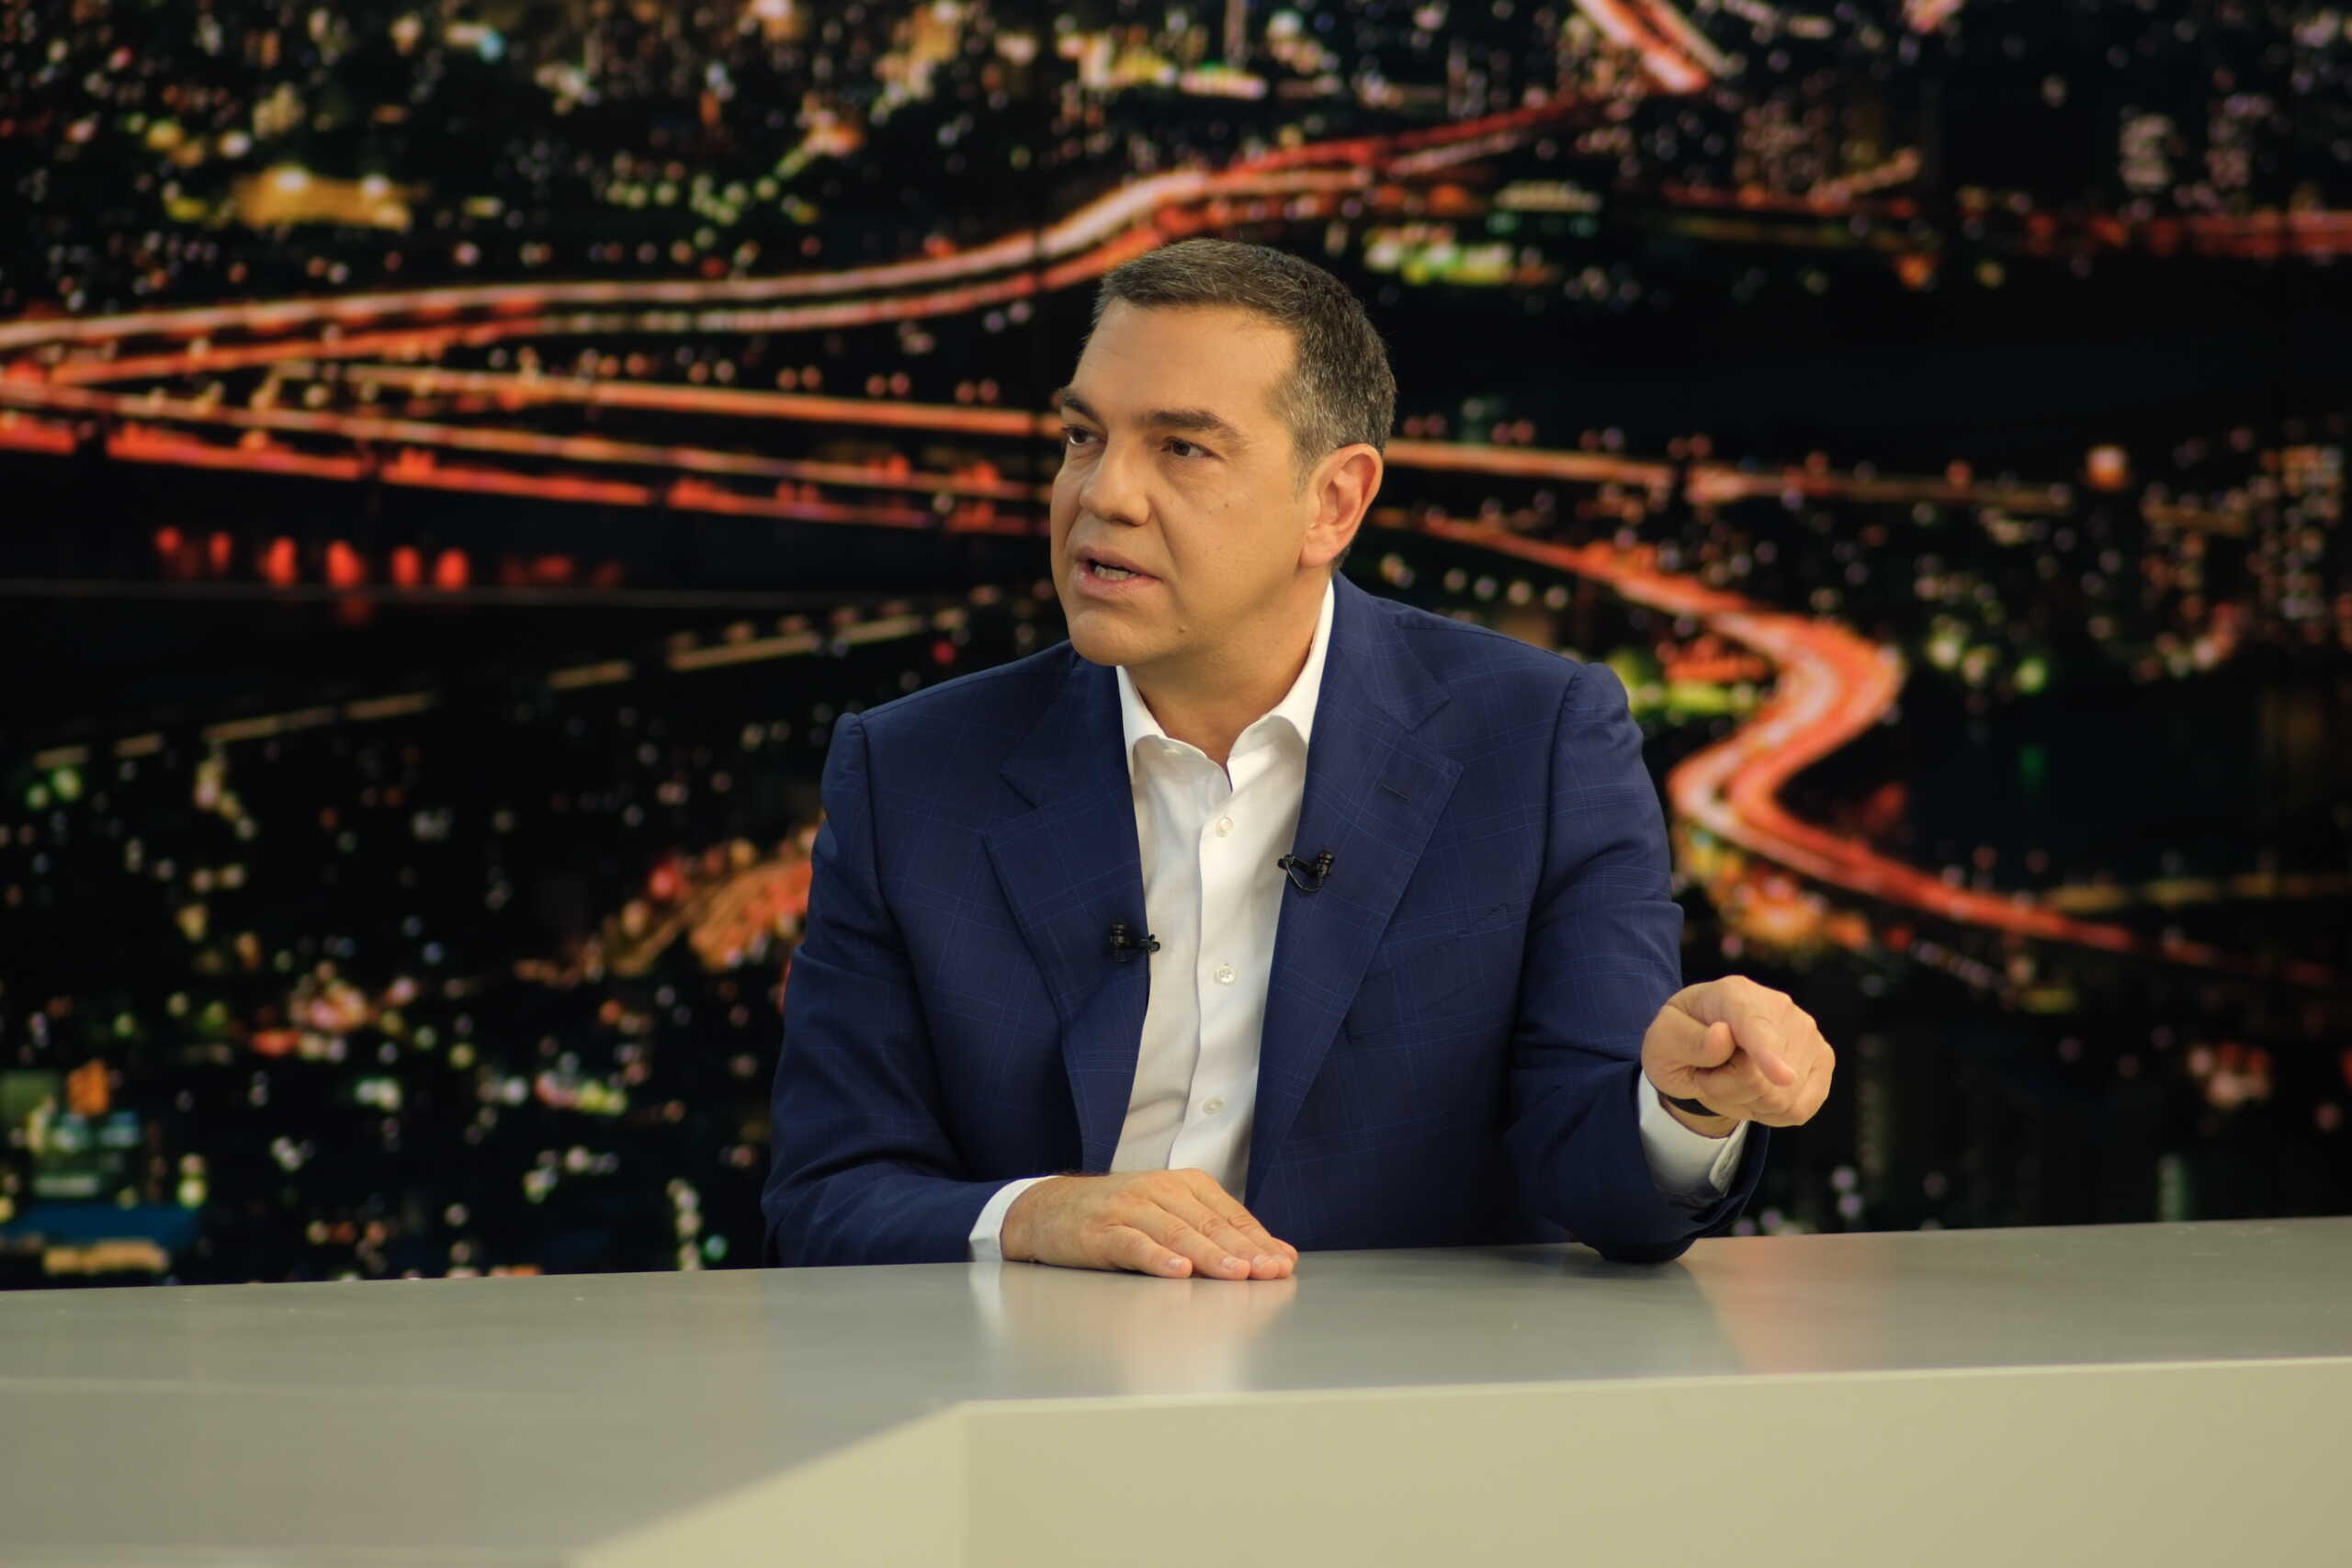 Εκλογές 2023 – Αλέξης Τσίπρας: Περίμενα από τον Ανδρουλάκη να βγάλει τον Μάντζο από τα ψηφοδέλτια